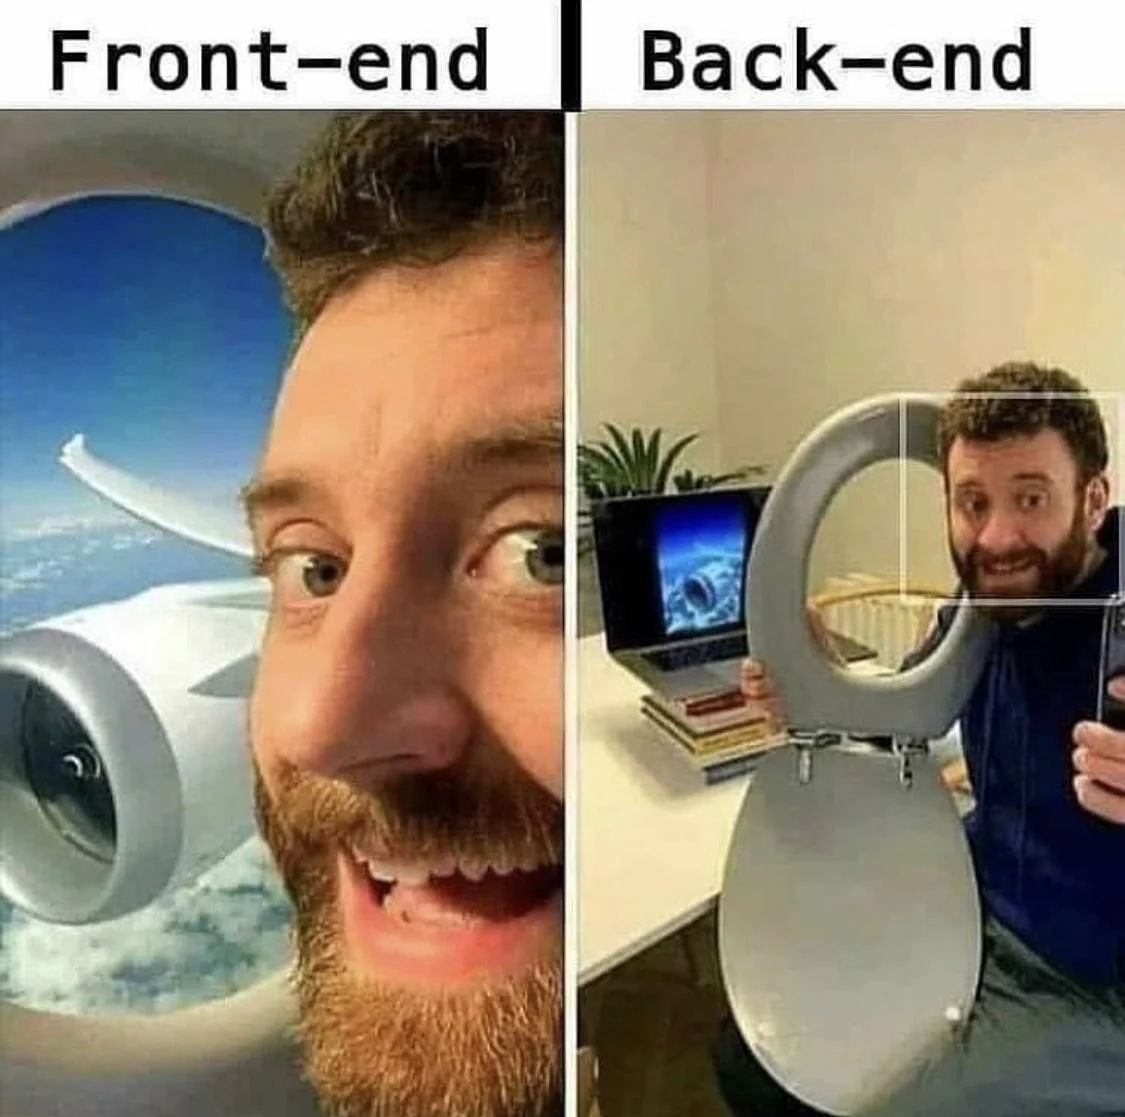 Front-end versus Back-end